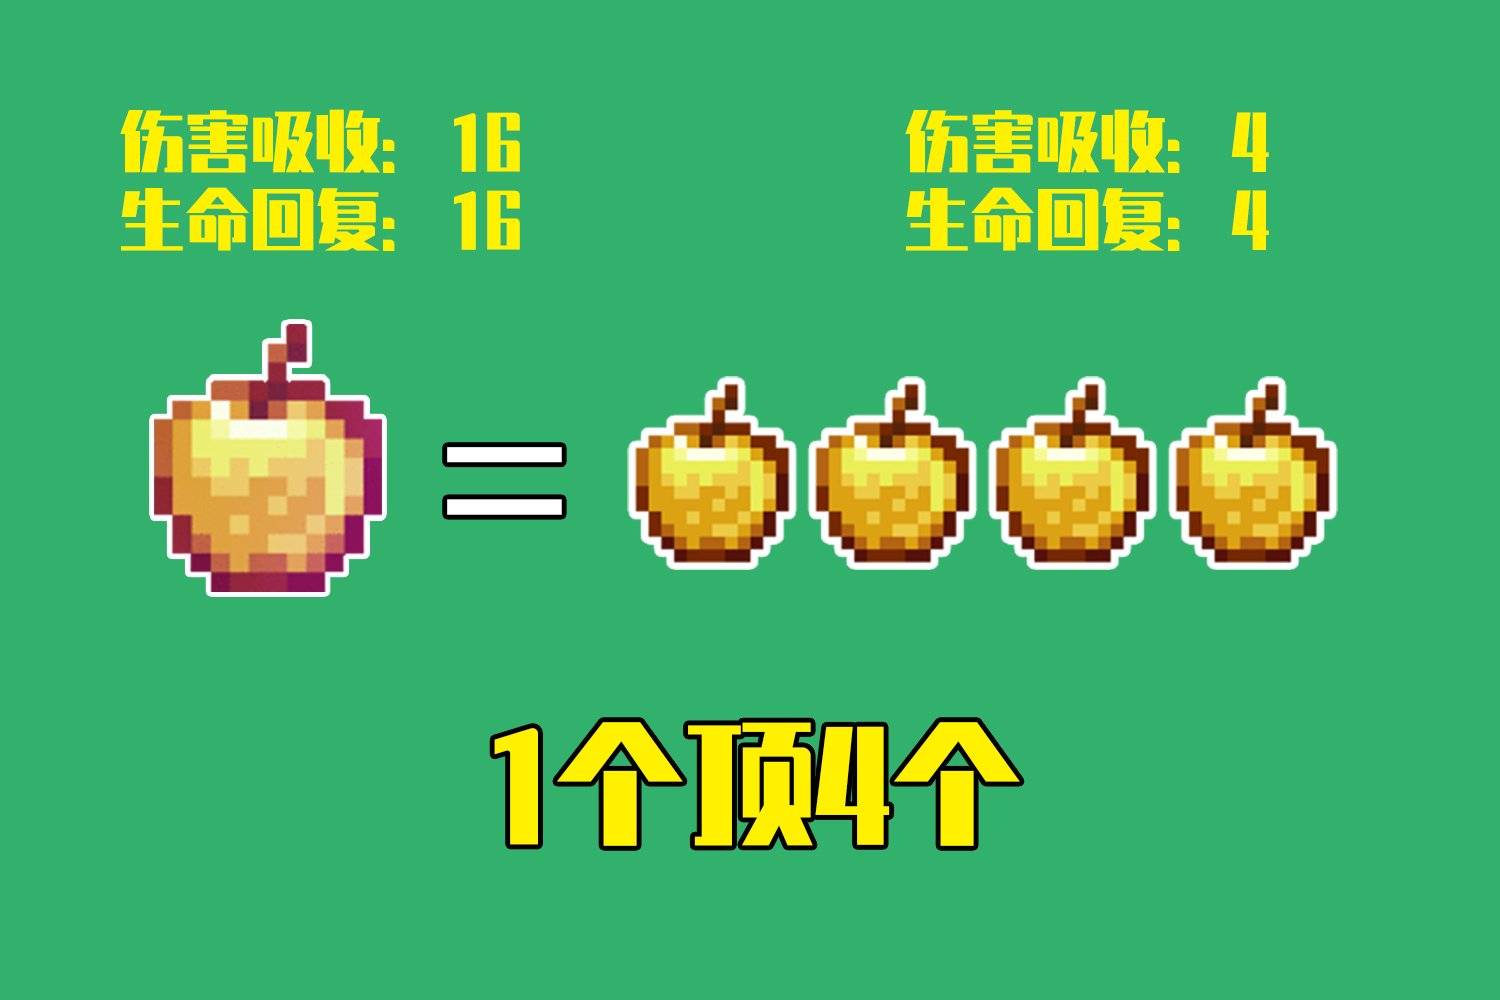 我的世界:8个金块合成金苹果,可回20血,它曾是mc中最好的食物